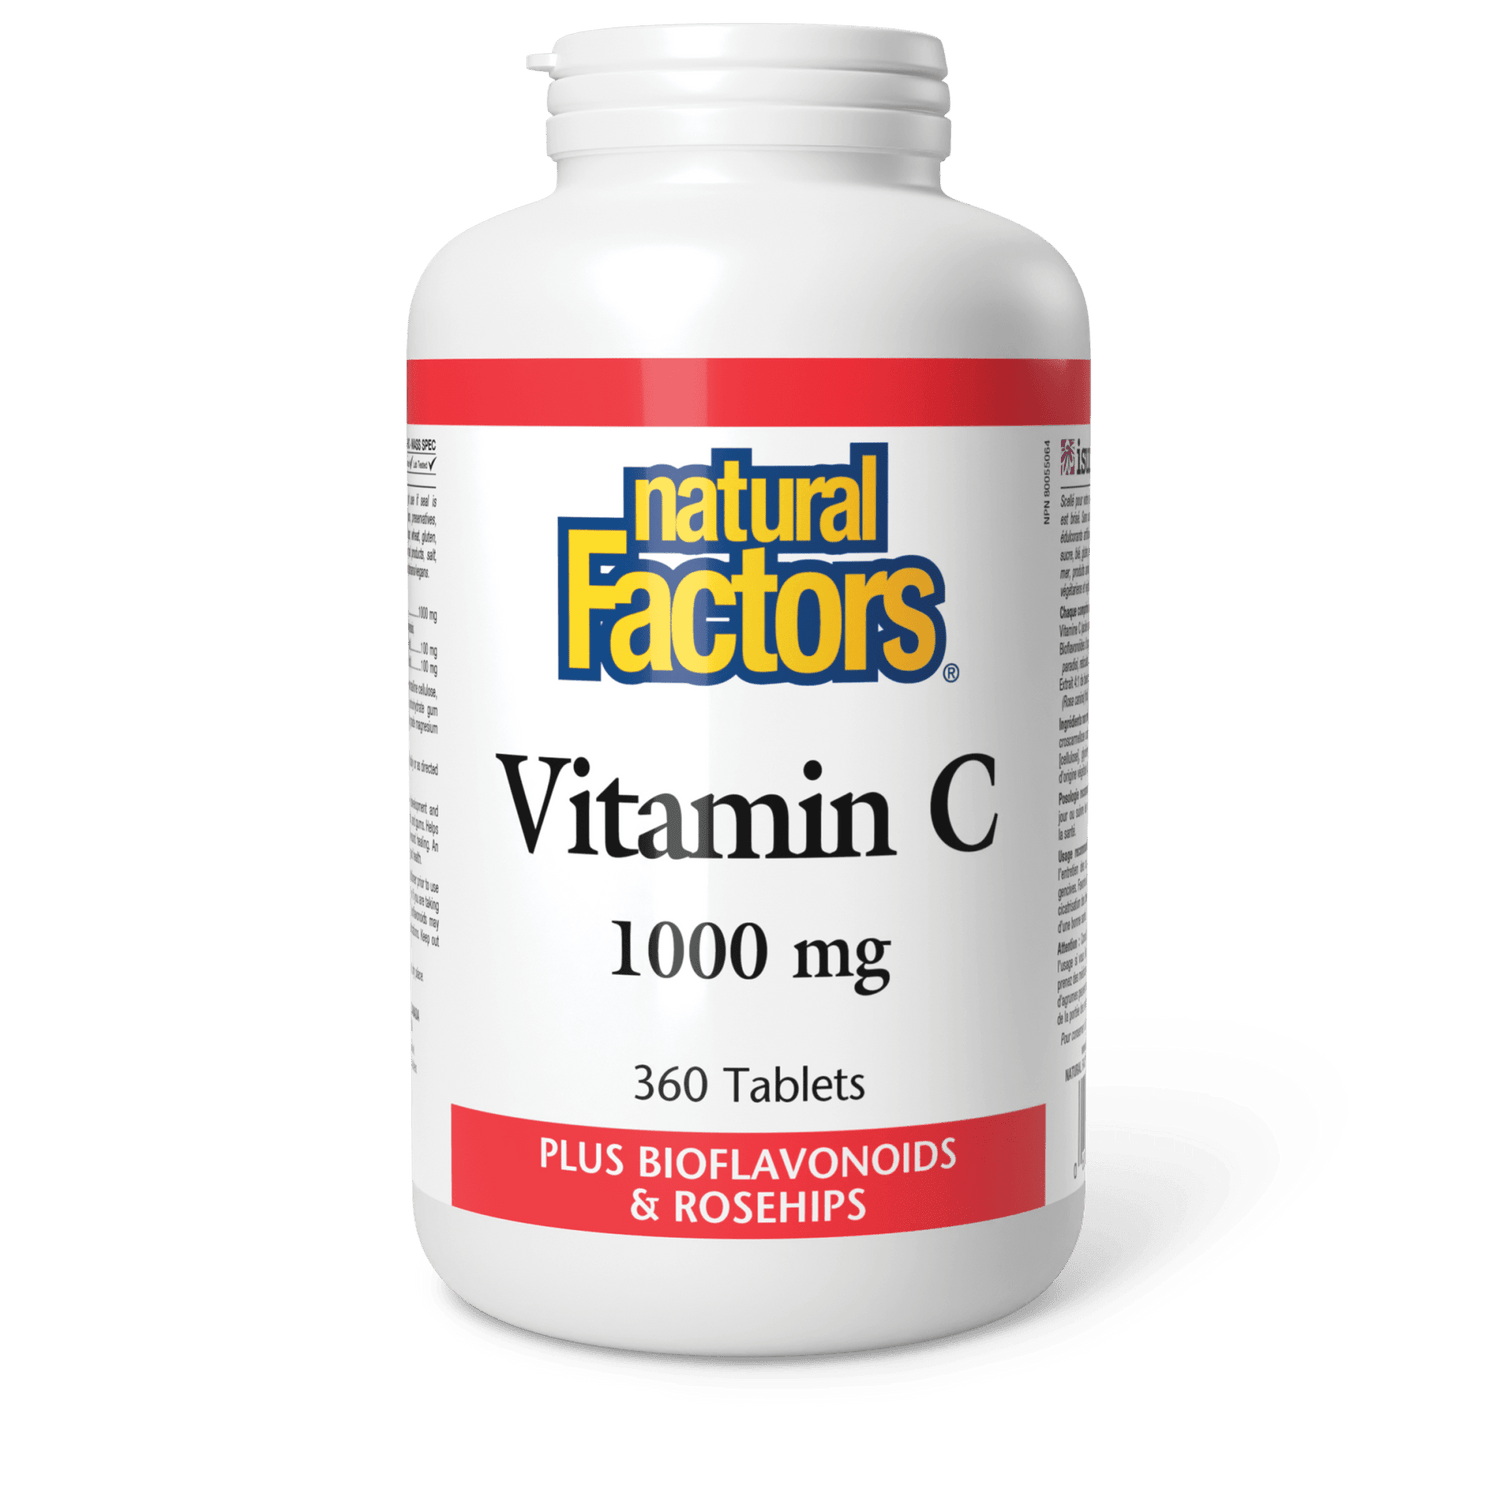 Vitamin C 1000 mg, Natural Factors|v|image|1347